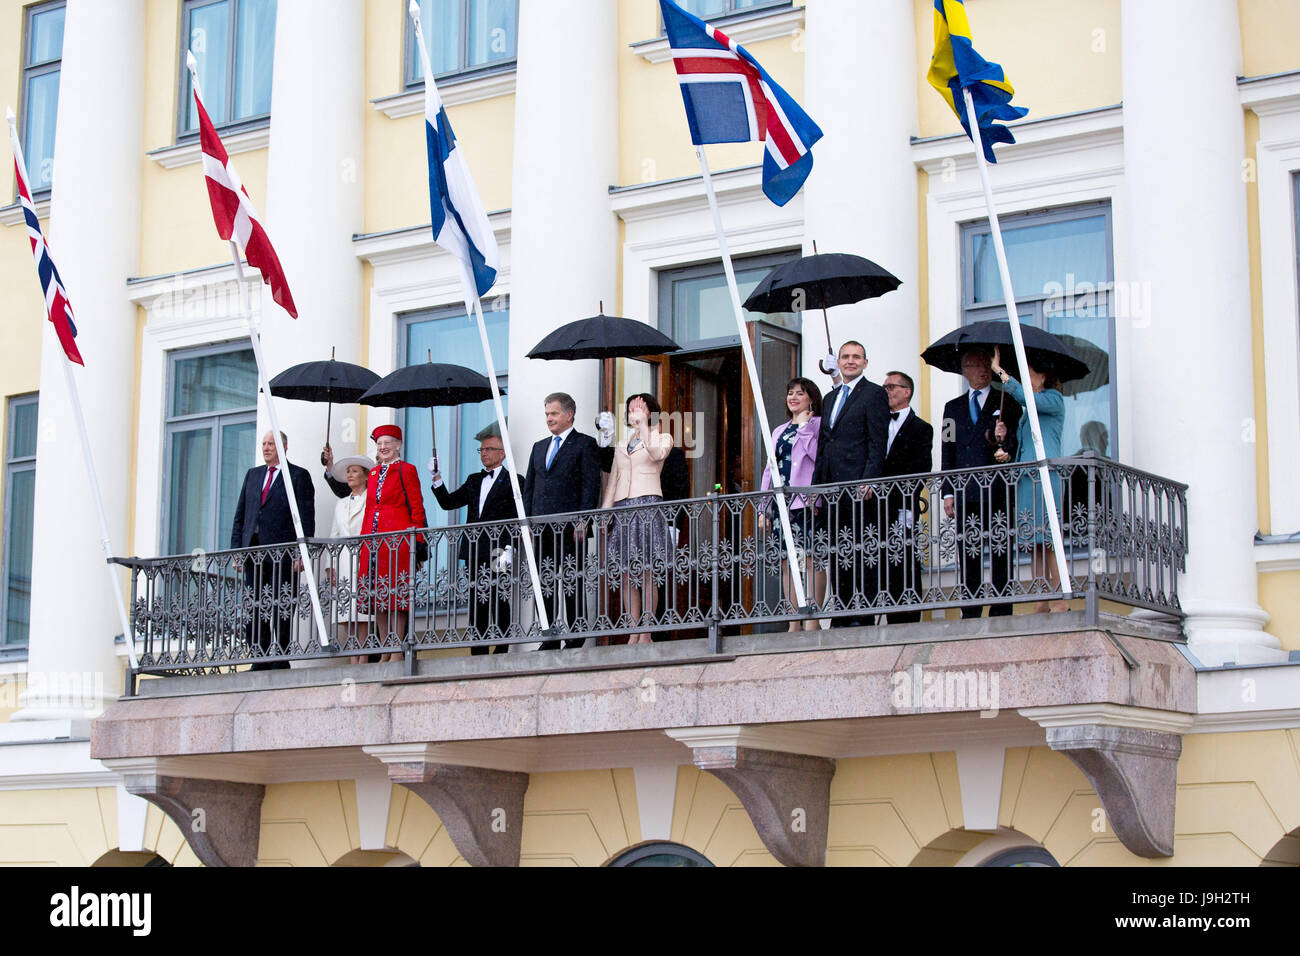 (170602) - HELSINKI, 2 juin 2017 (Xinhua) -- L-R (F) le Roi Harald V et la reine Sonja de Norvège, la Reine Margrethe II de Danemark, le président de la Finlande Sauli Niinisto et sa femme Jenni Haukio, Président de l'Islande Gudni Johannesson et sa femme Eliza Jean Reid, le Roi Carl XVI Gustaf et la Reine Silvia de Suède vague de personnes sur le balcon du palais présidentiel à Helsinki, Finlande, Juin 1, 2017. La cohésion de la région nordique a été mis en évidence le jeudi lorsque les chefs d'état de tous les cinq pays nordiques se sont réunis à Helsinki pour célébrer le centenaire de l'indépendance finlandaise. (Xinhua/Matti Matikai Banque D'Images